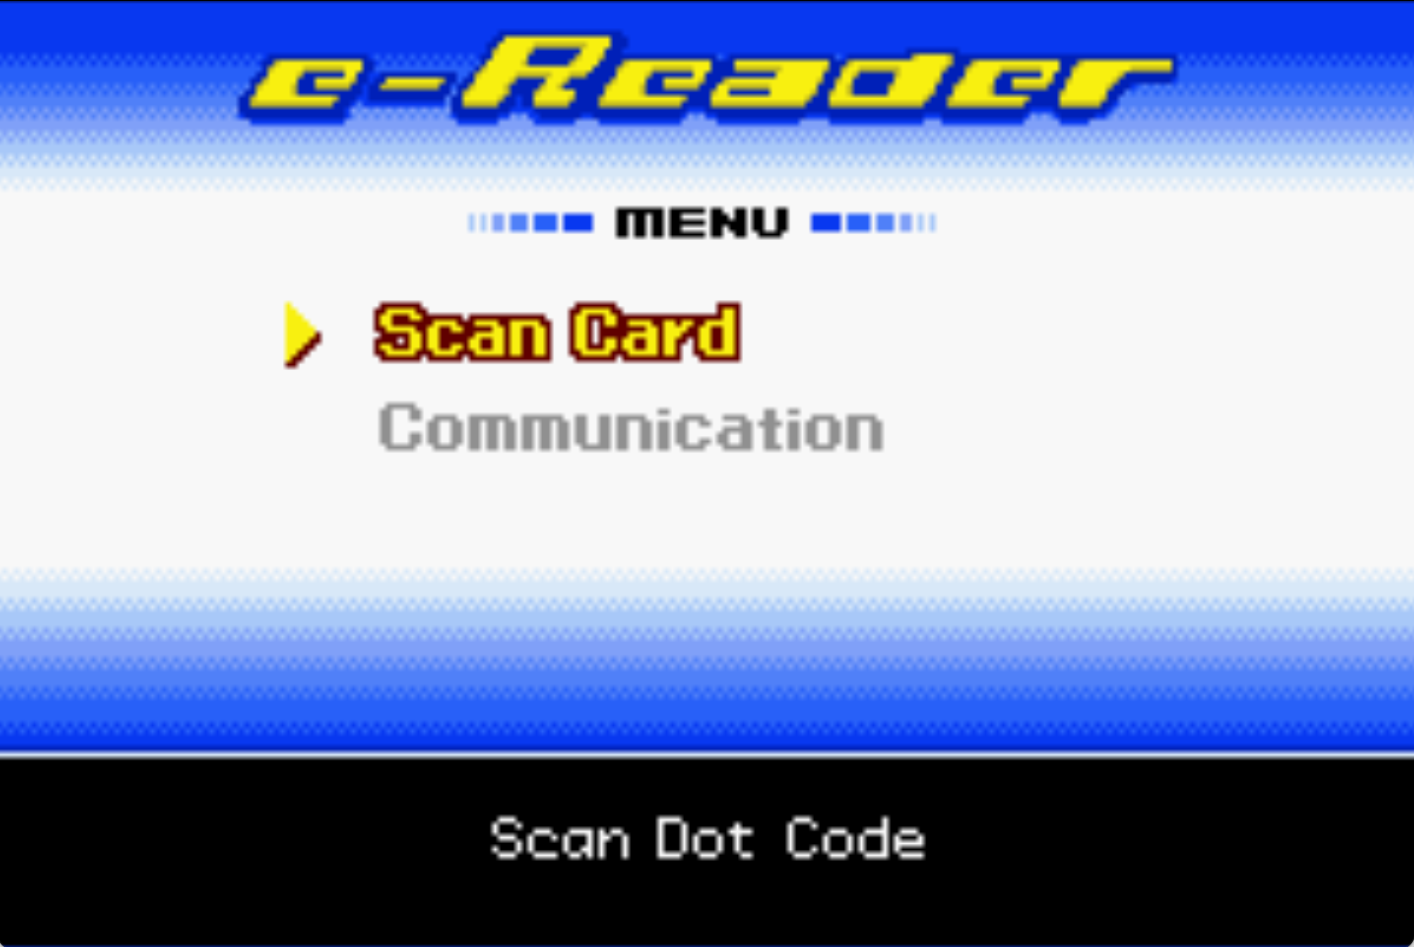 E-reader Scan Card